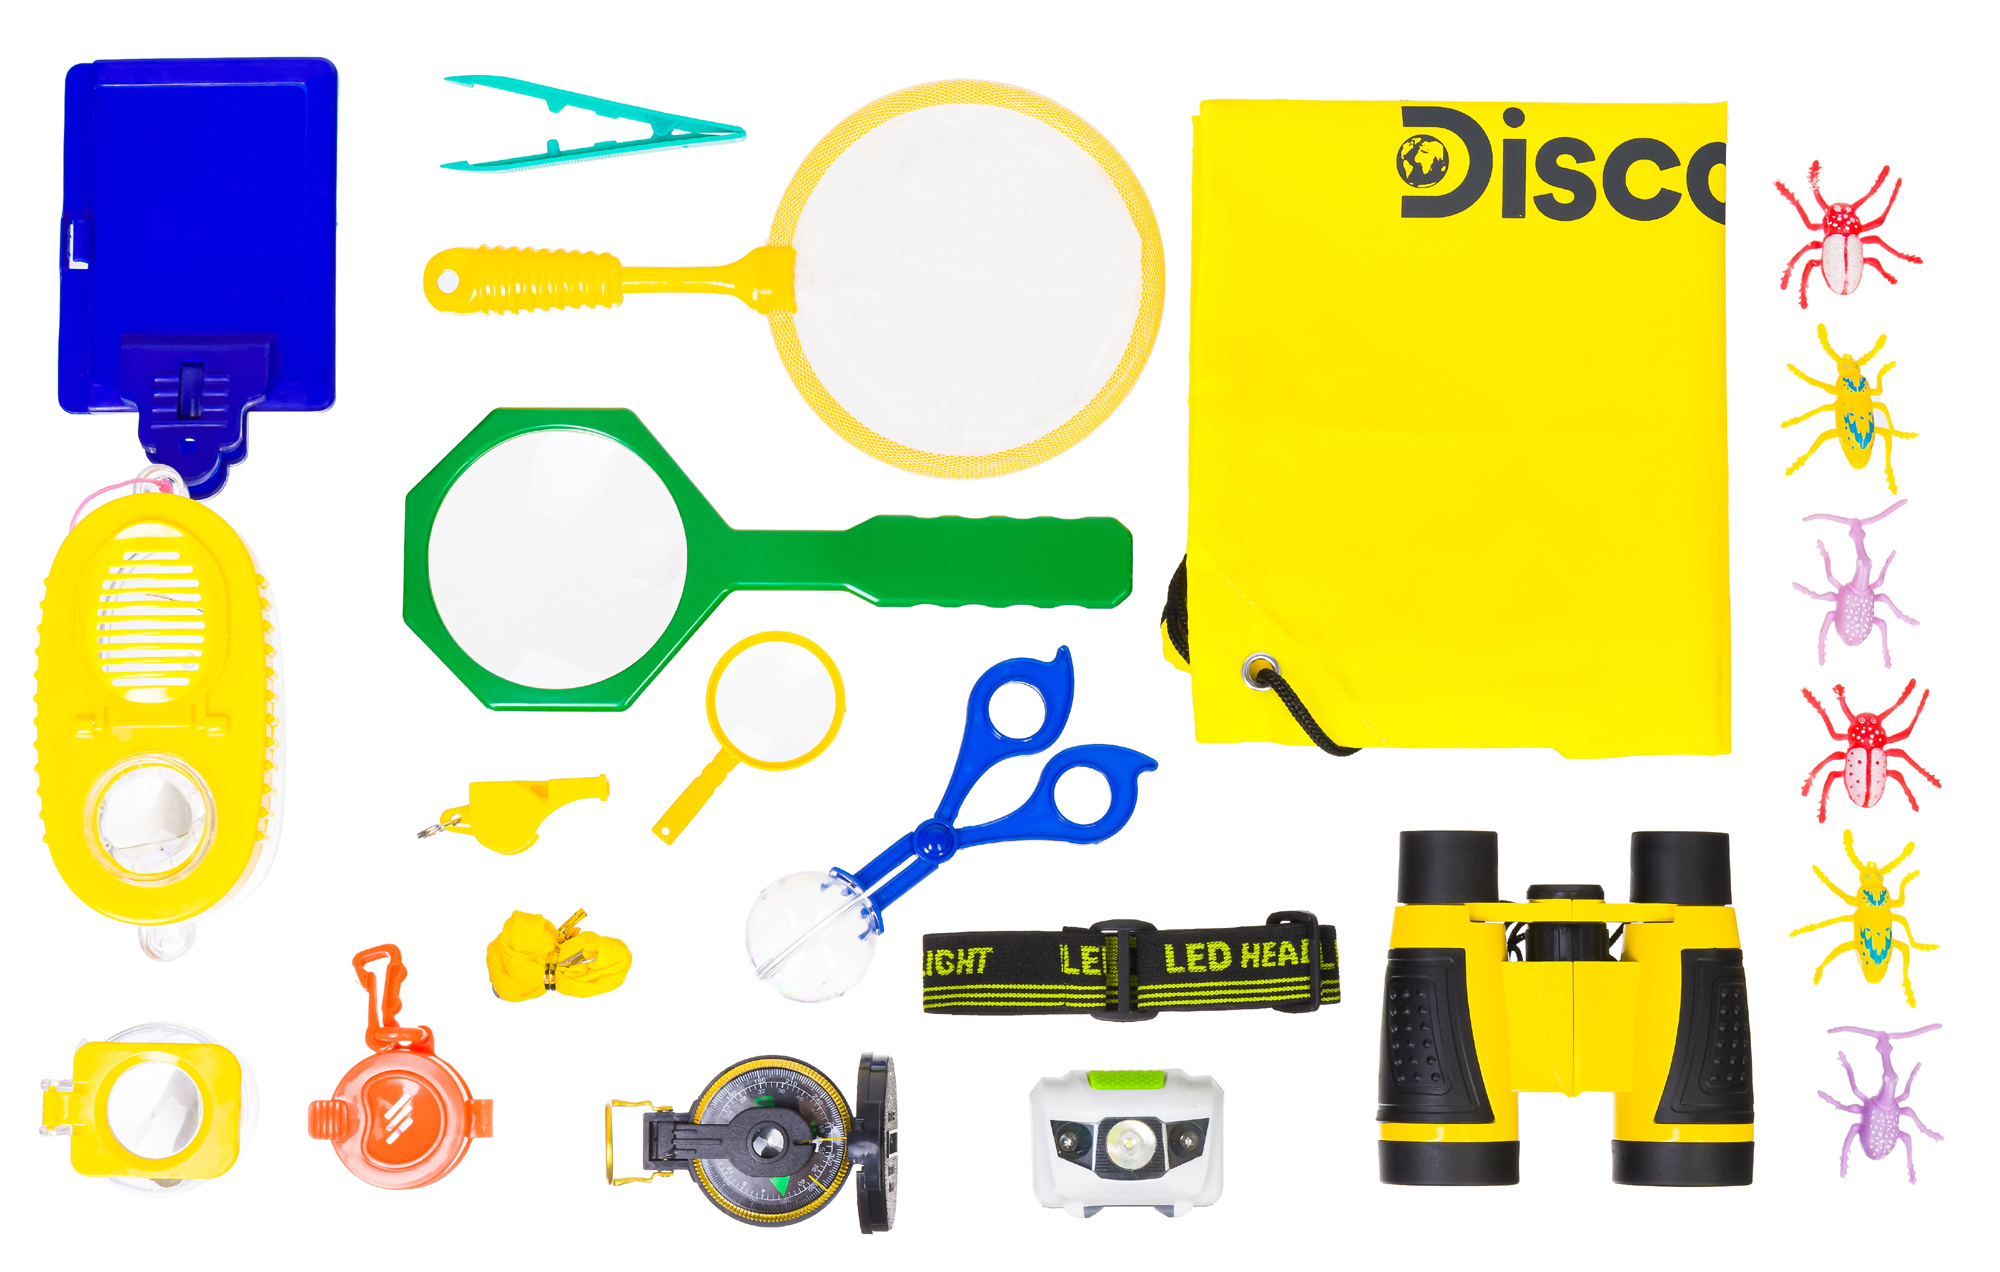 Detská prírodovedná sada Discovery Basics EK70 Explorer Kit je urèená pre všetkých malých zvedavcov, ktorí sa chcú sta� uznávaným biológom